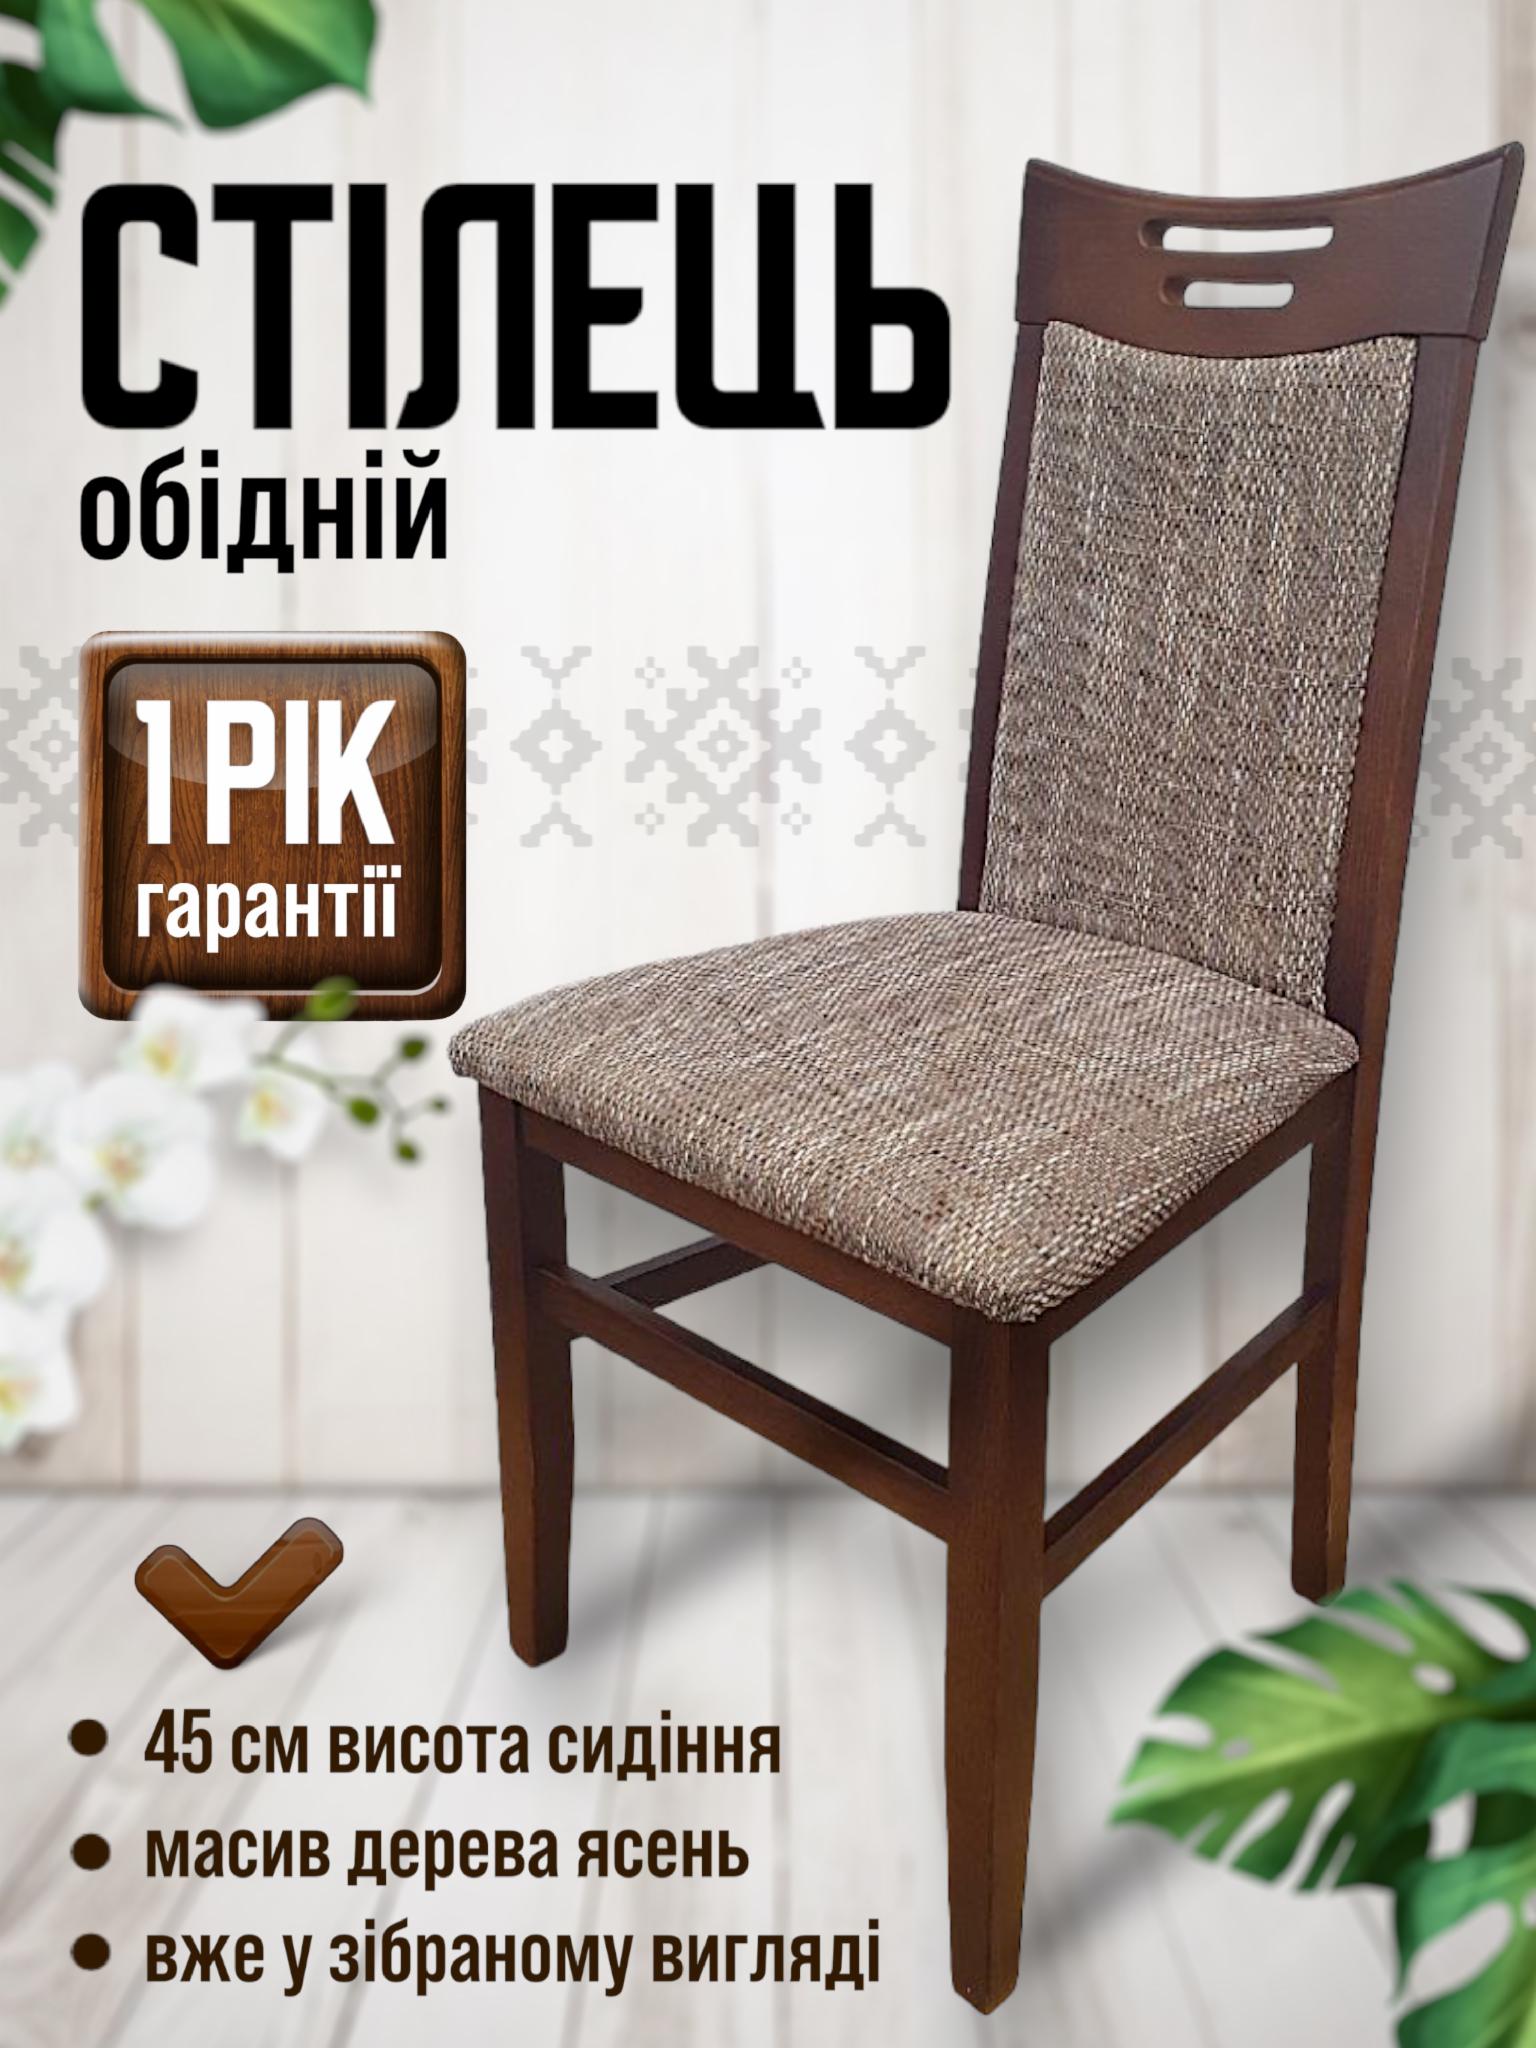 Купить стулья для кухни недорого. Стулья для современной и классической кухни фото, цены